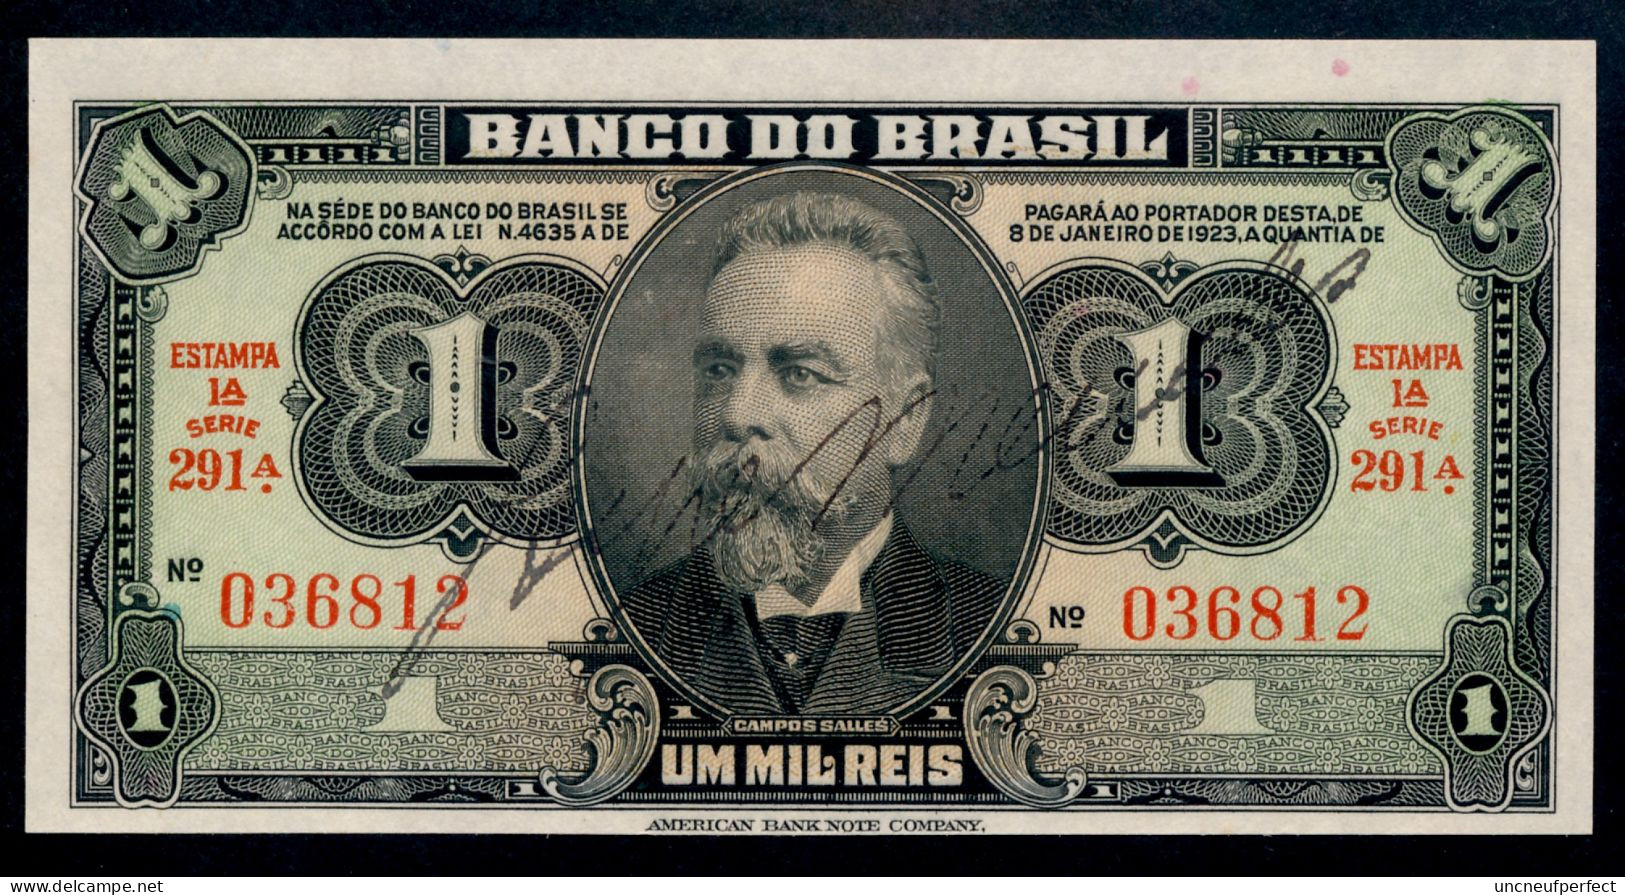 Brésil P 131a (1944) 1 MIL REIS - UNC - Série 291 N° 036812 RARE!!! - Brésil